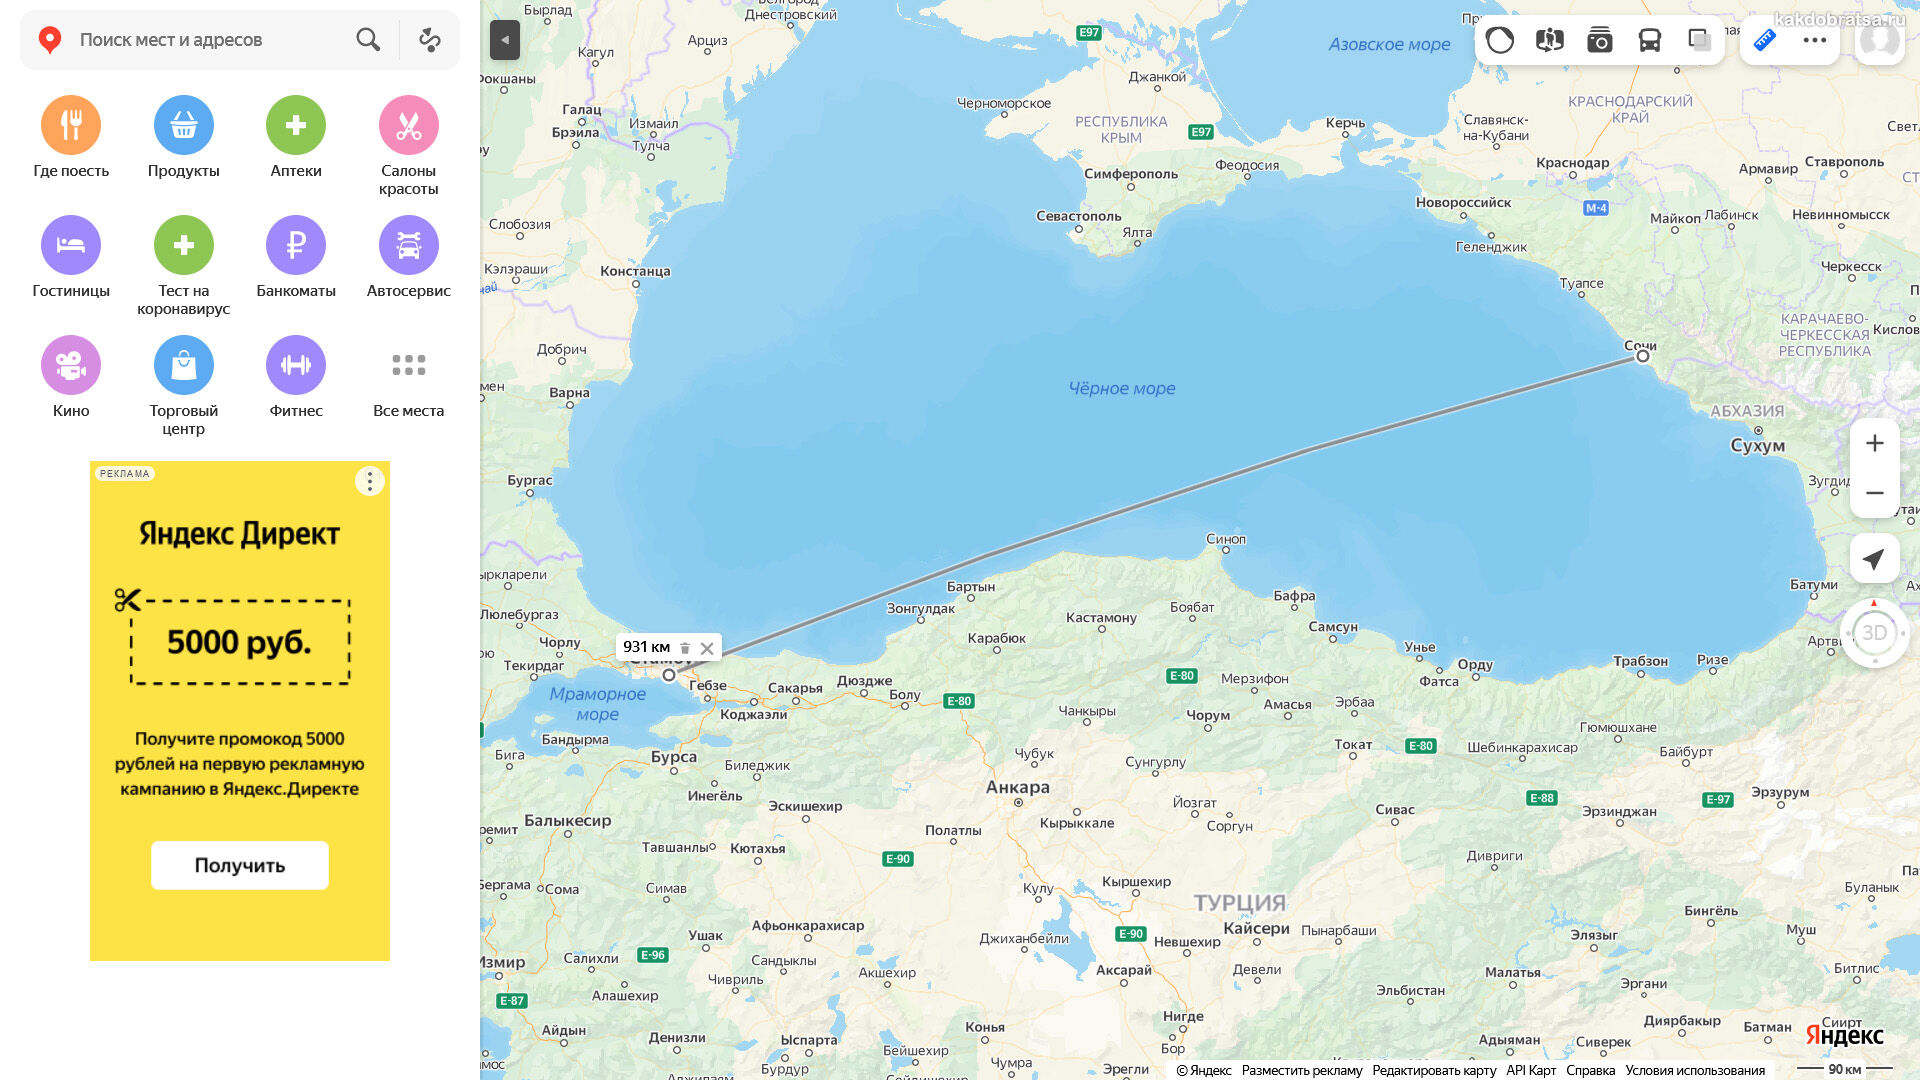 Расстояние между Сочи и Стамбулом по карте